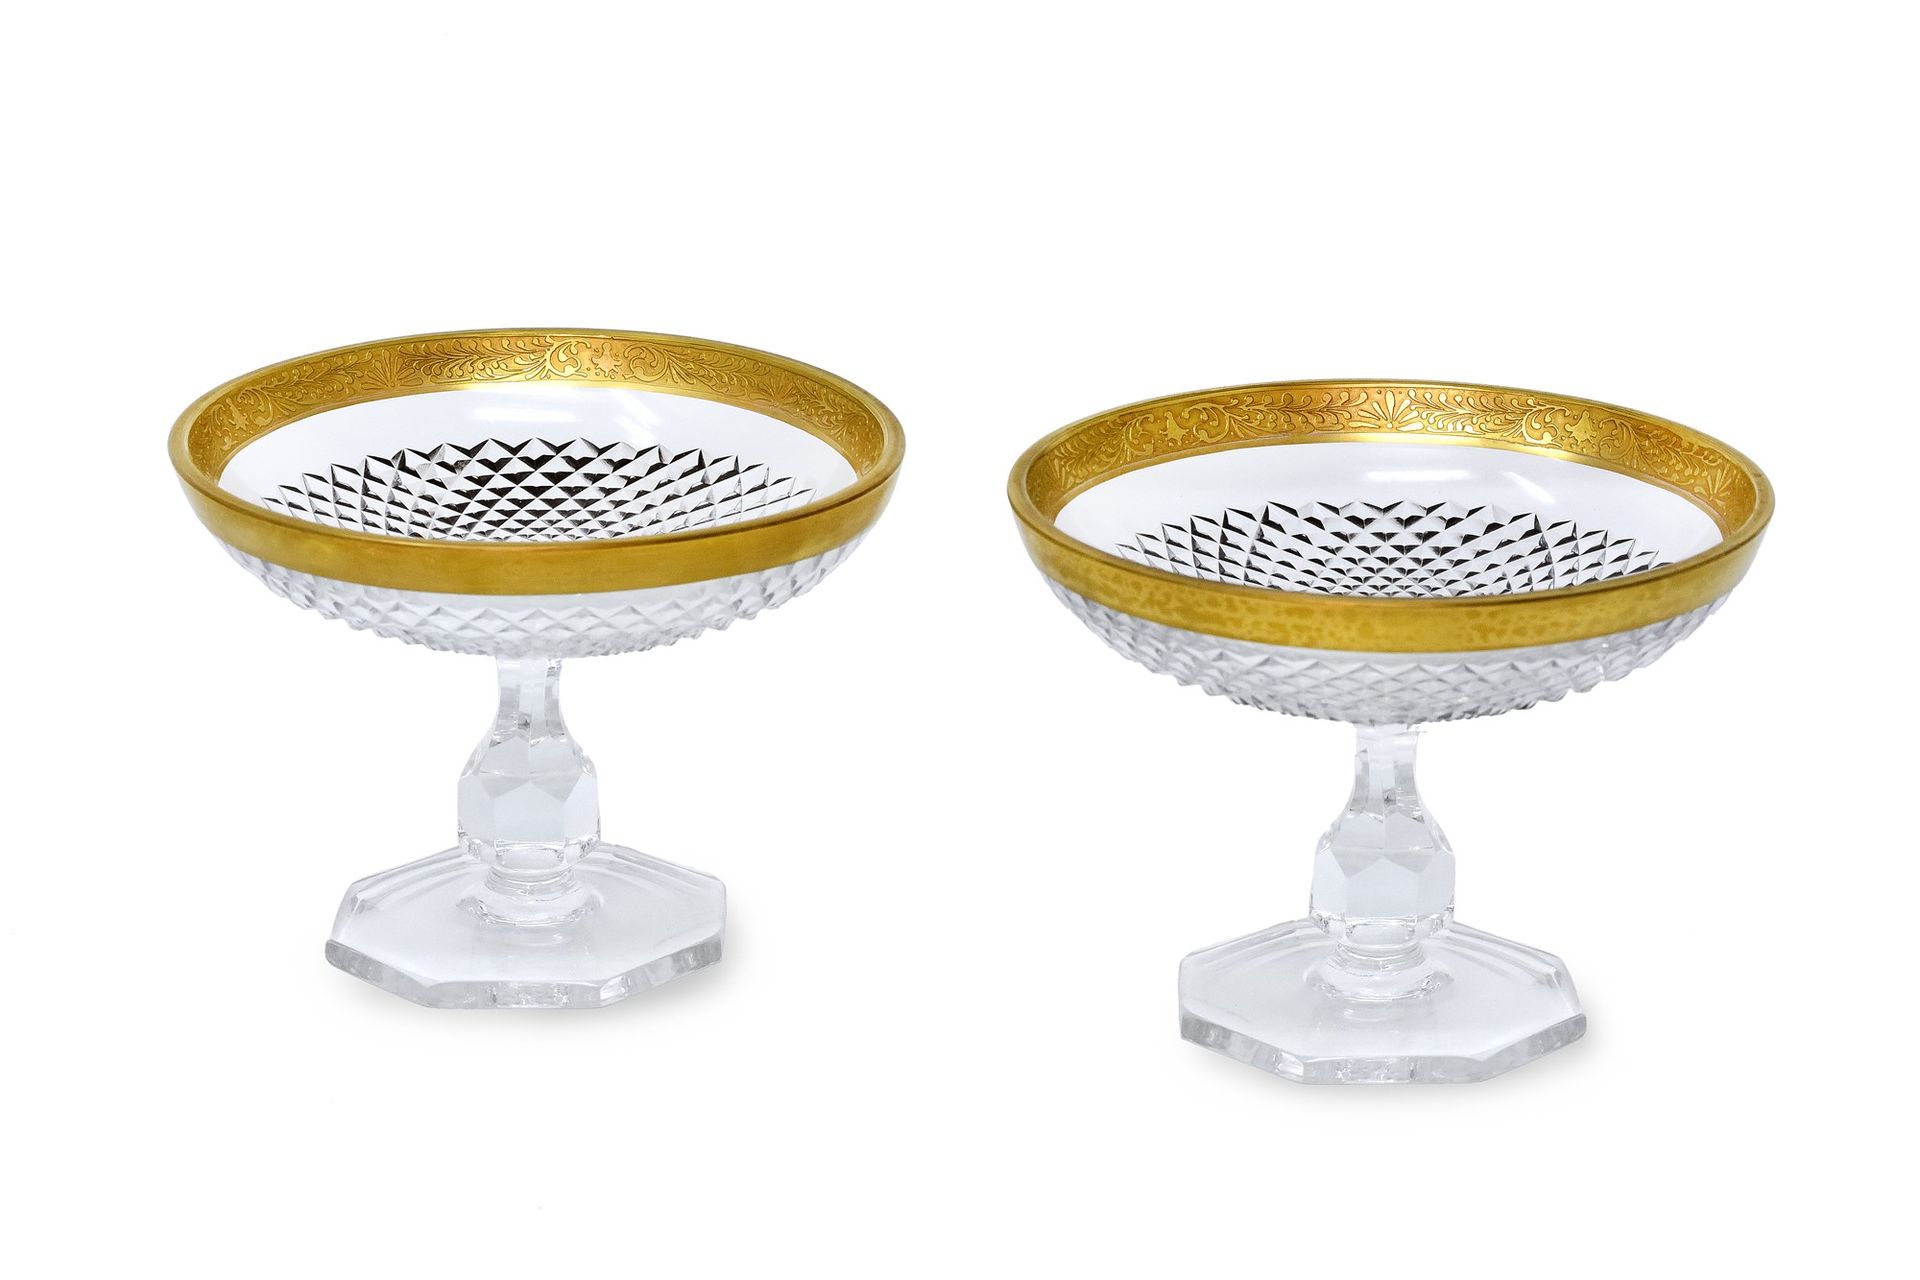 Null 本拍品由两个巴卡拉水晶加工碗组成，有金色的轮廓。

 





 

本拍品由两个金色轮廓的巴卡拉水晶碗组成。